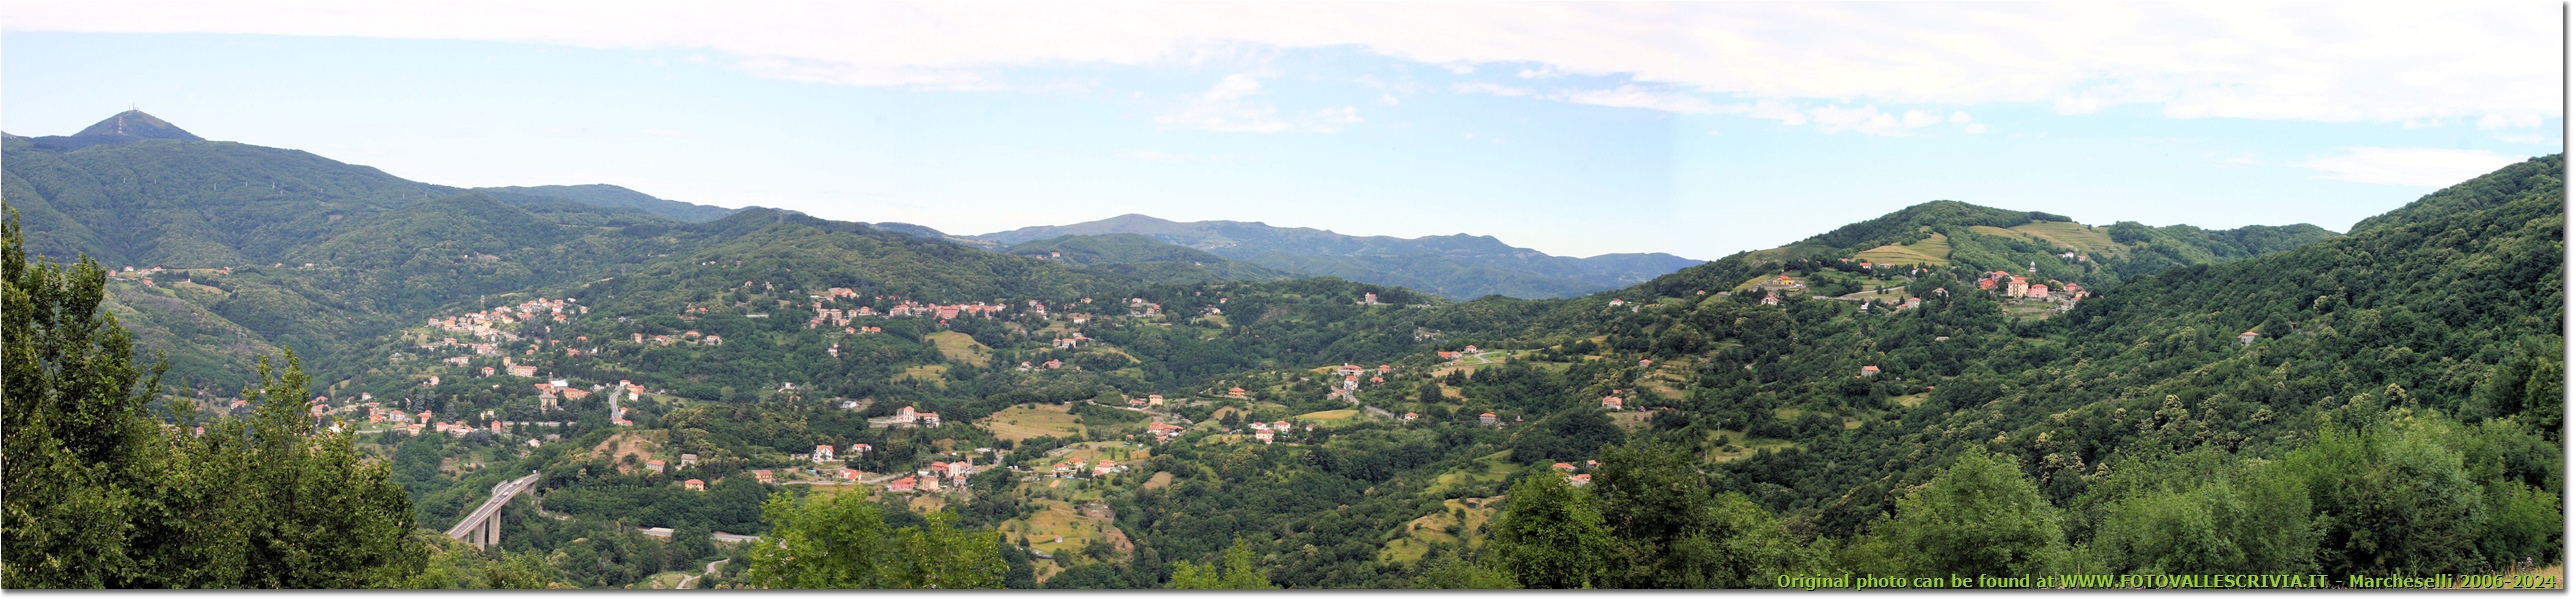 Passo dei Giovi (panorama dal Monte Leco al Santuario della Vittoria) - Altro - 2009 - Panorami - Estate - Canon EOS 300D